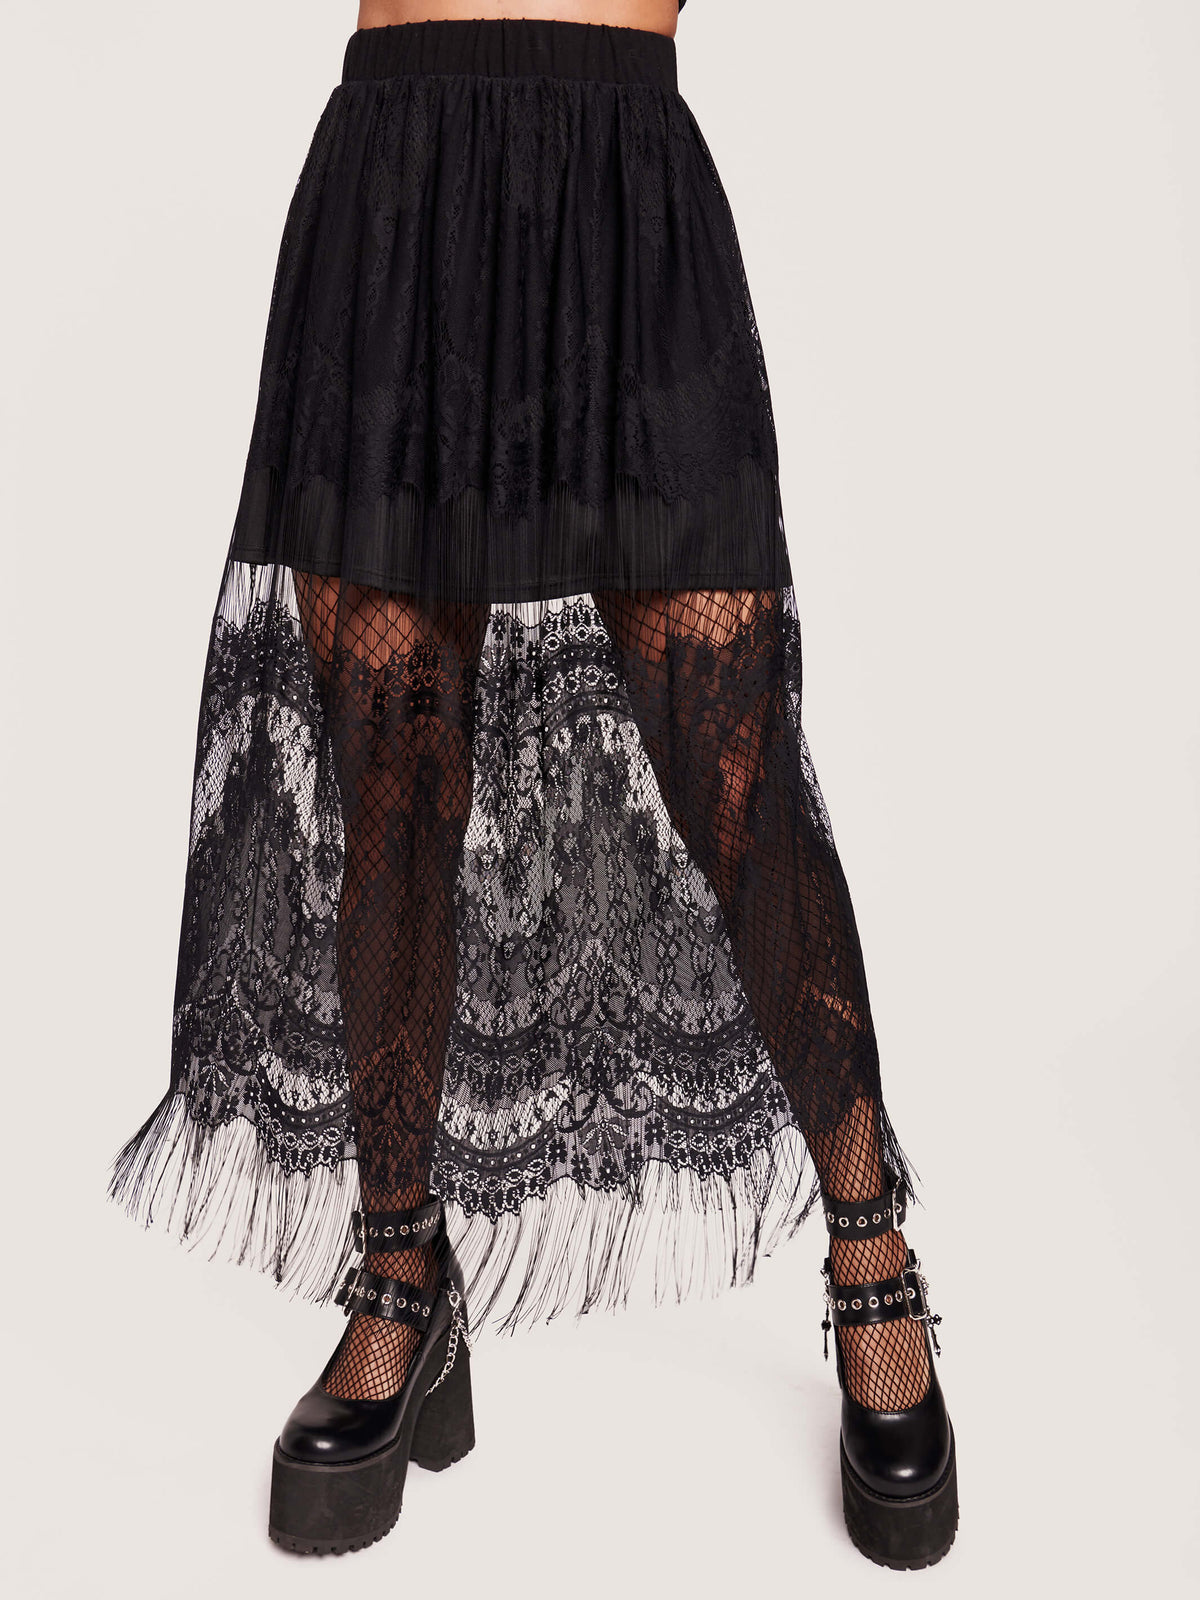 Black lace skirt with eyelash hem.